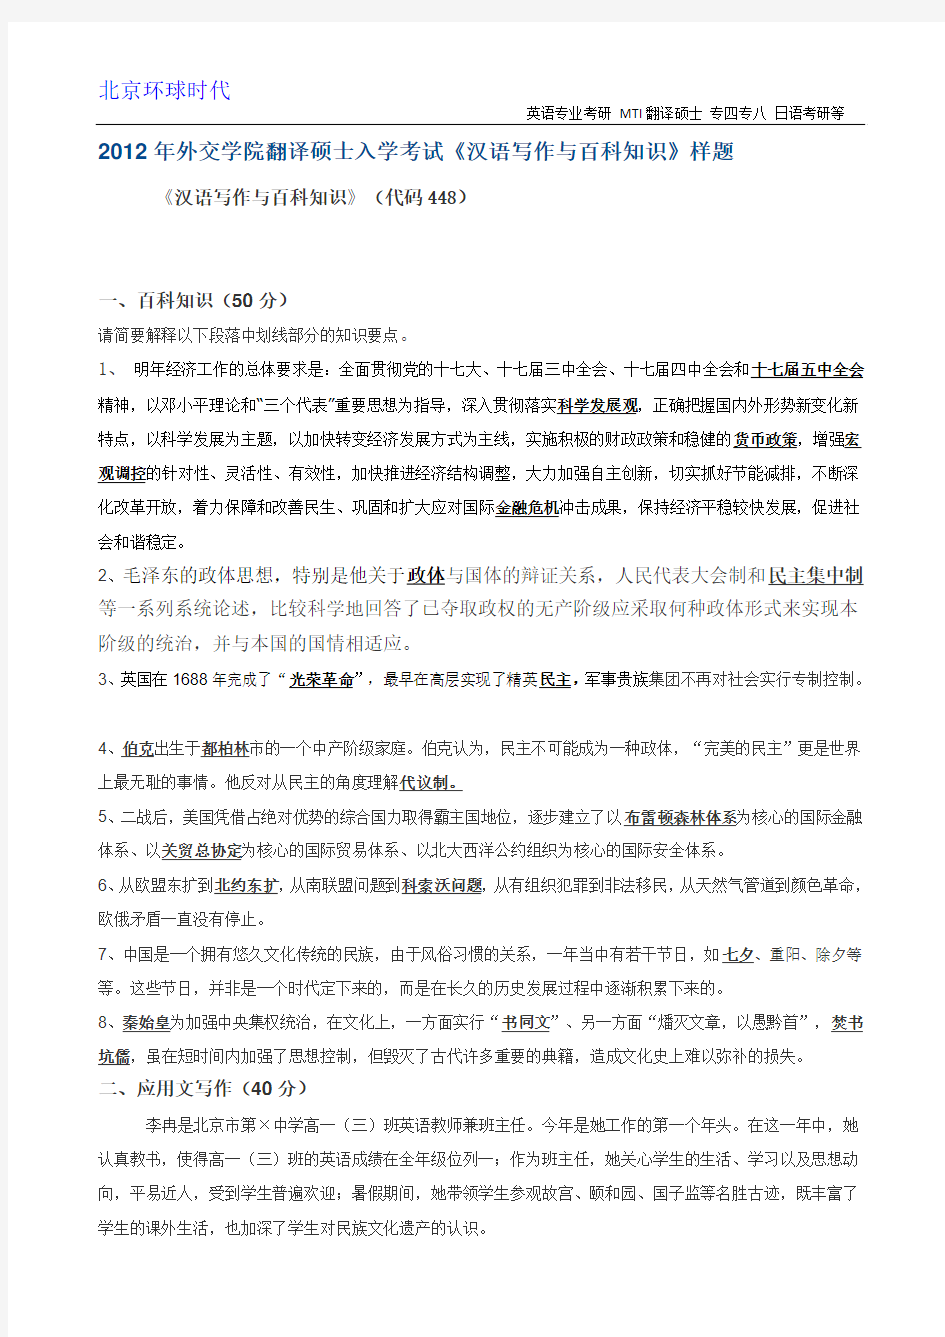 2012年外交学院翻译硕士入学考试《汉语写作与百科知识》样题